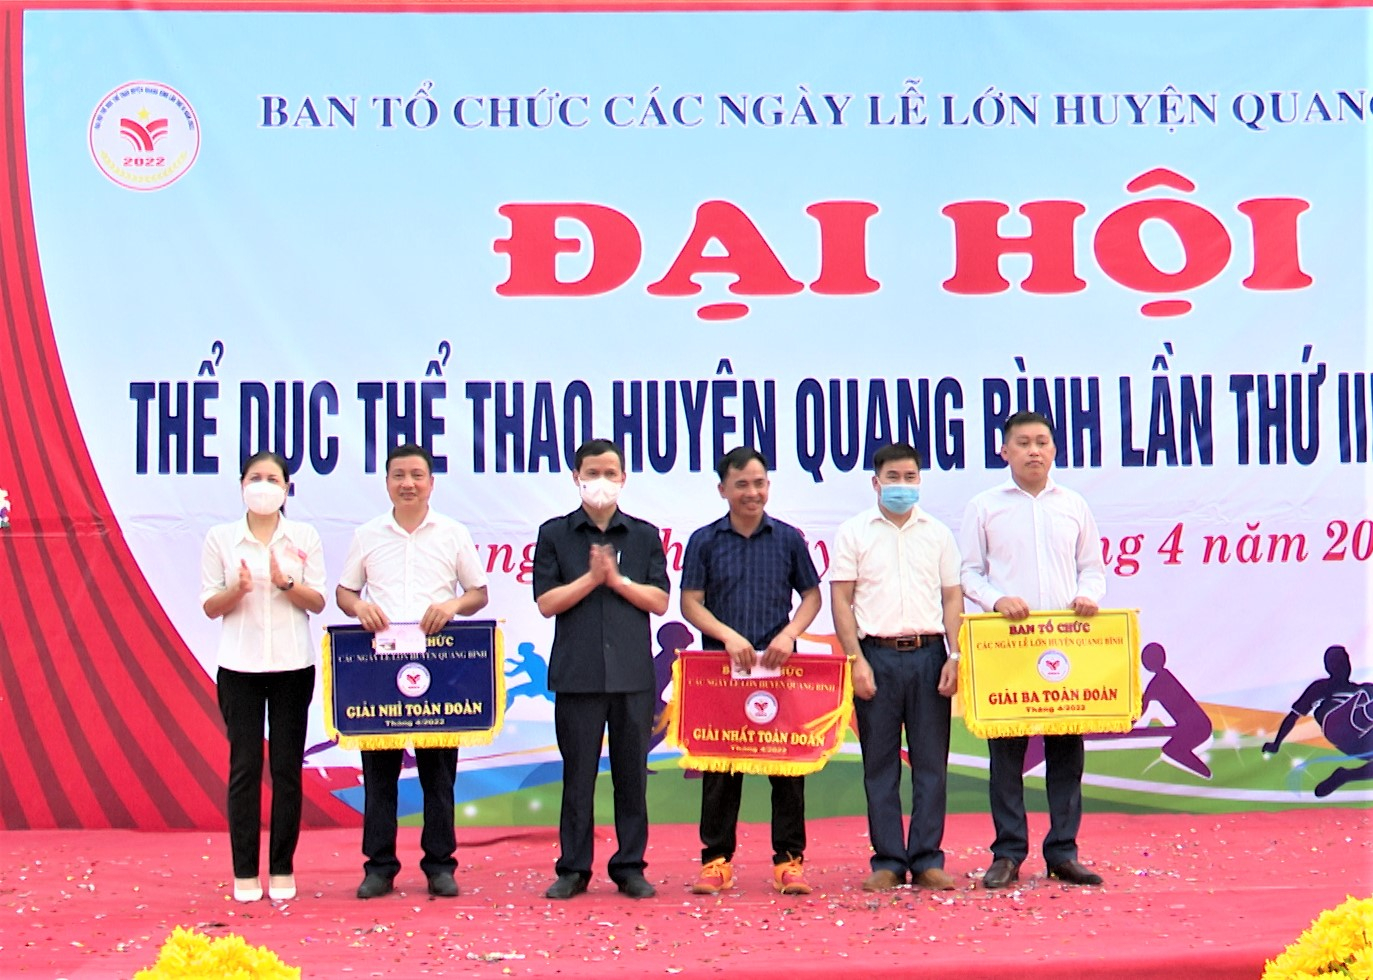 Lãnh đạo huyện Quang Bình trao giải Nhất, Nhì, Ba toàn đoàn cho các xã đạt thành tích cao trong các môn thi đấu